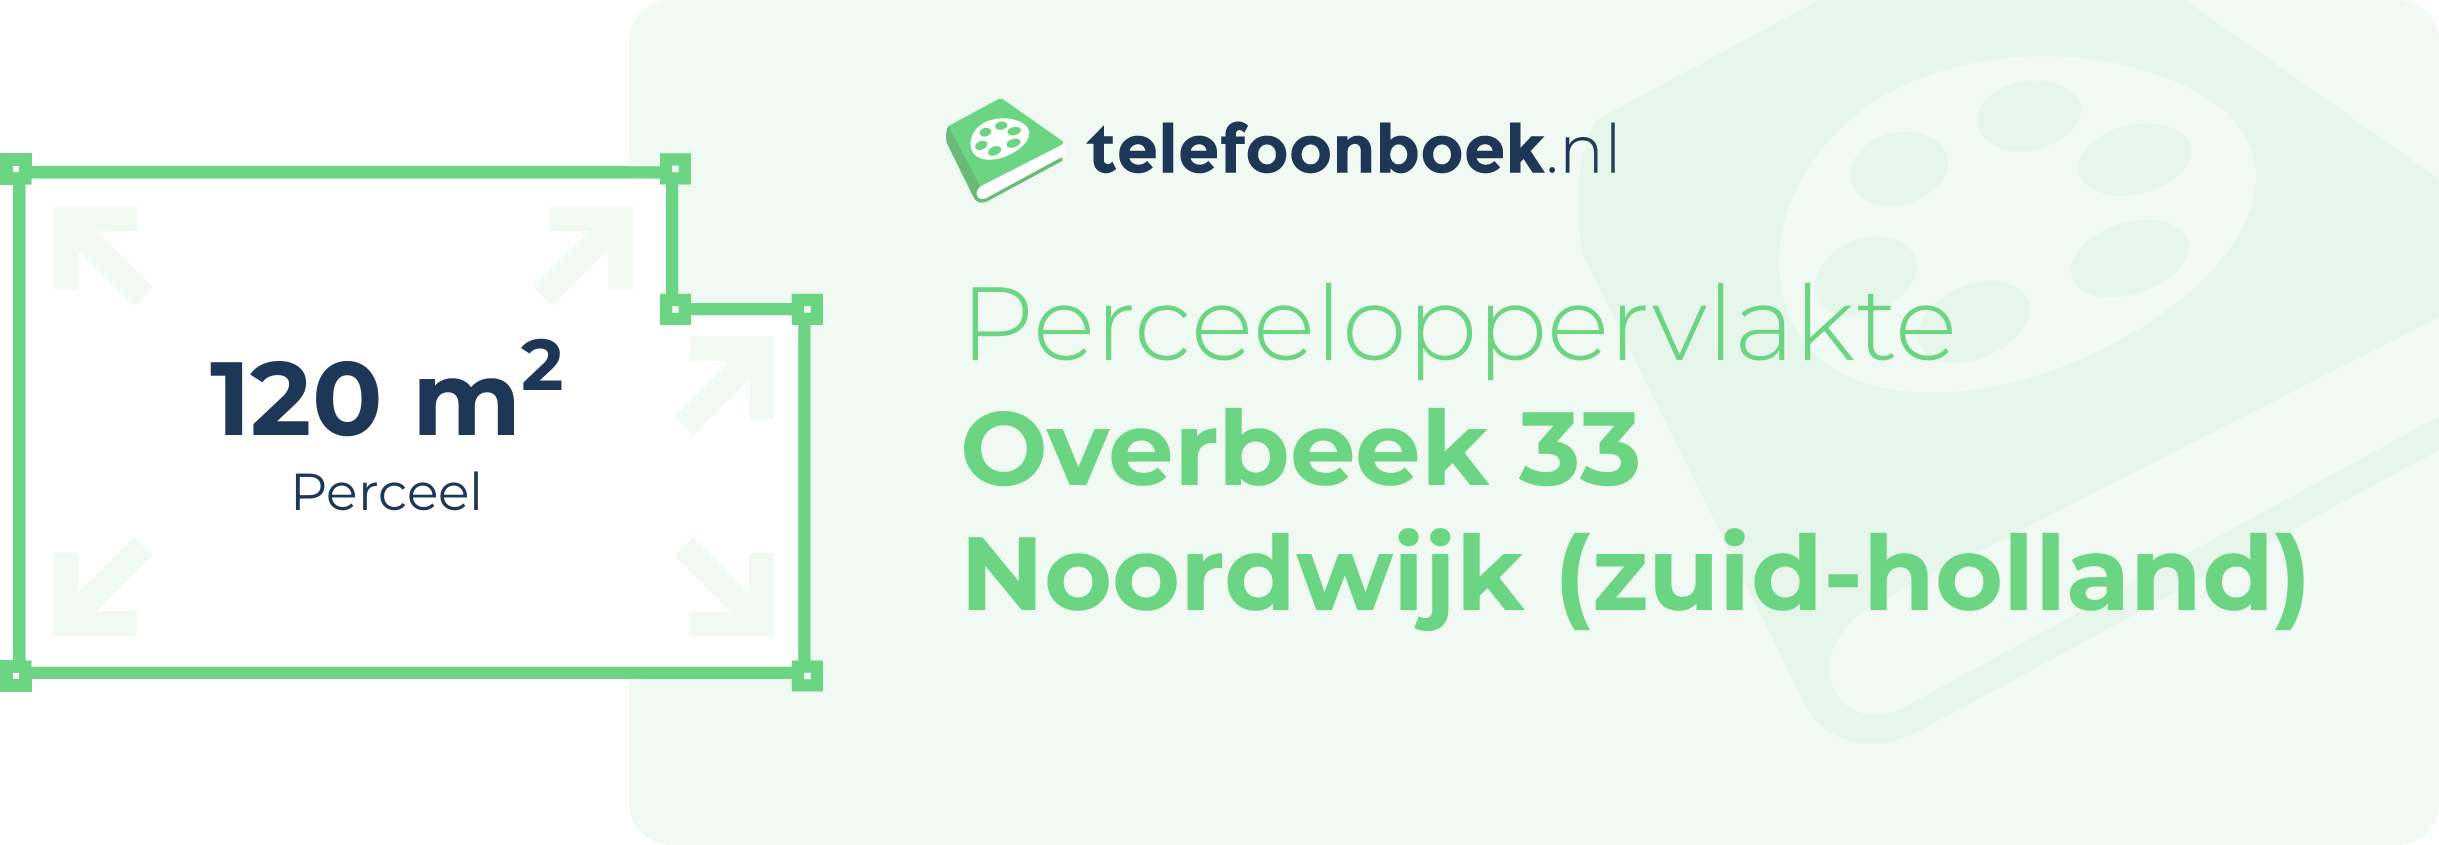 Perceeloppervlakte Overbeek 33 Noordwijk (Zuid-Holland)